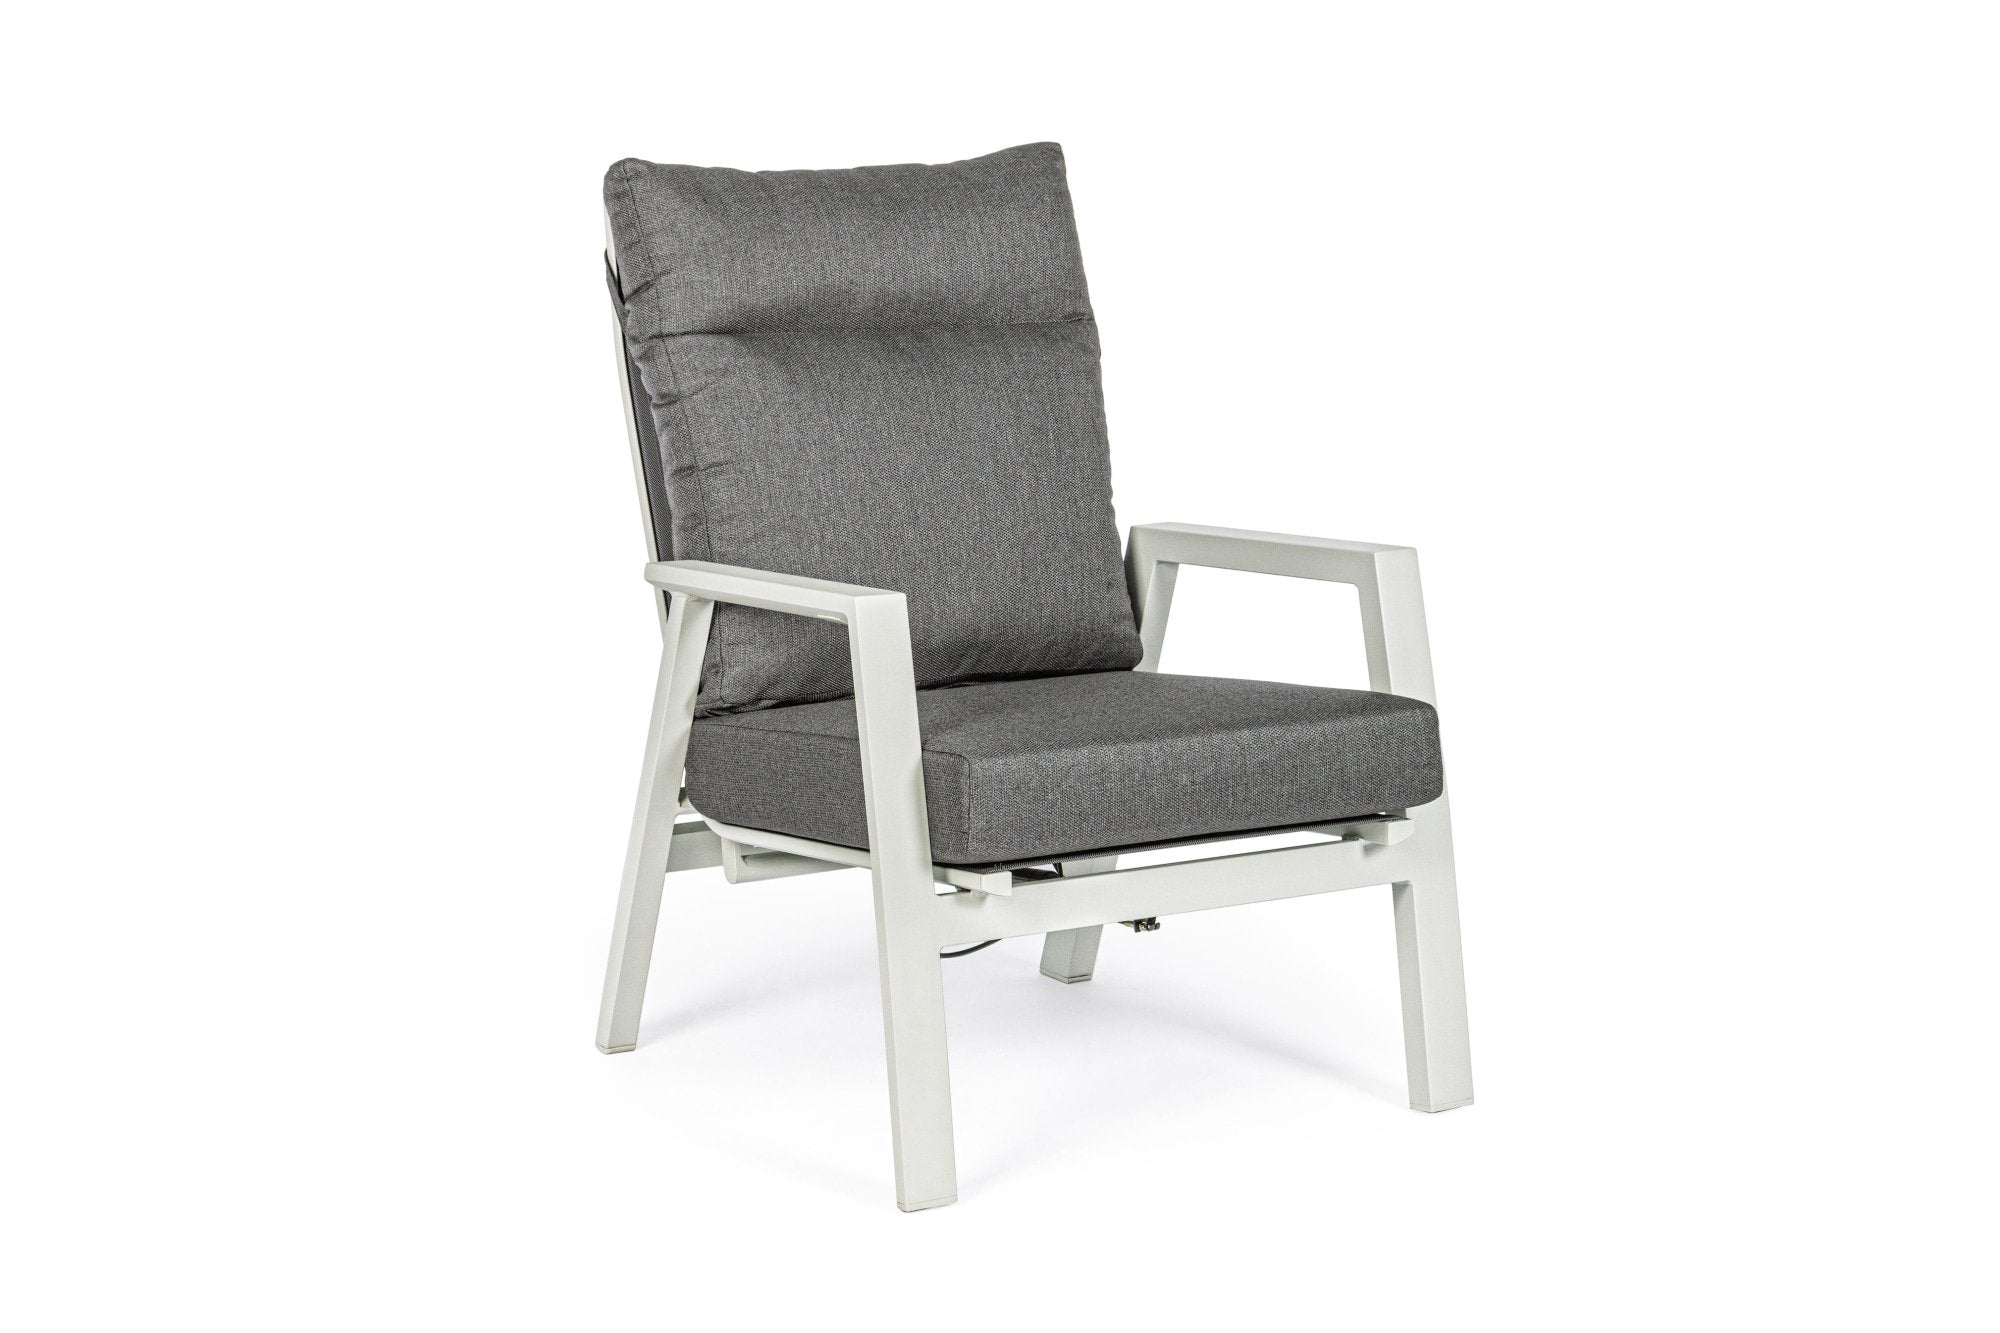 Kledi Lunar Kerti/terasz fotel, Bizzotto, 72 x 81 x 98 cm, állítható hátrész, alumínium/textil 1x1, szürke